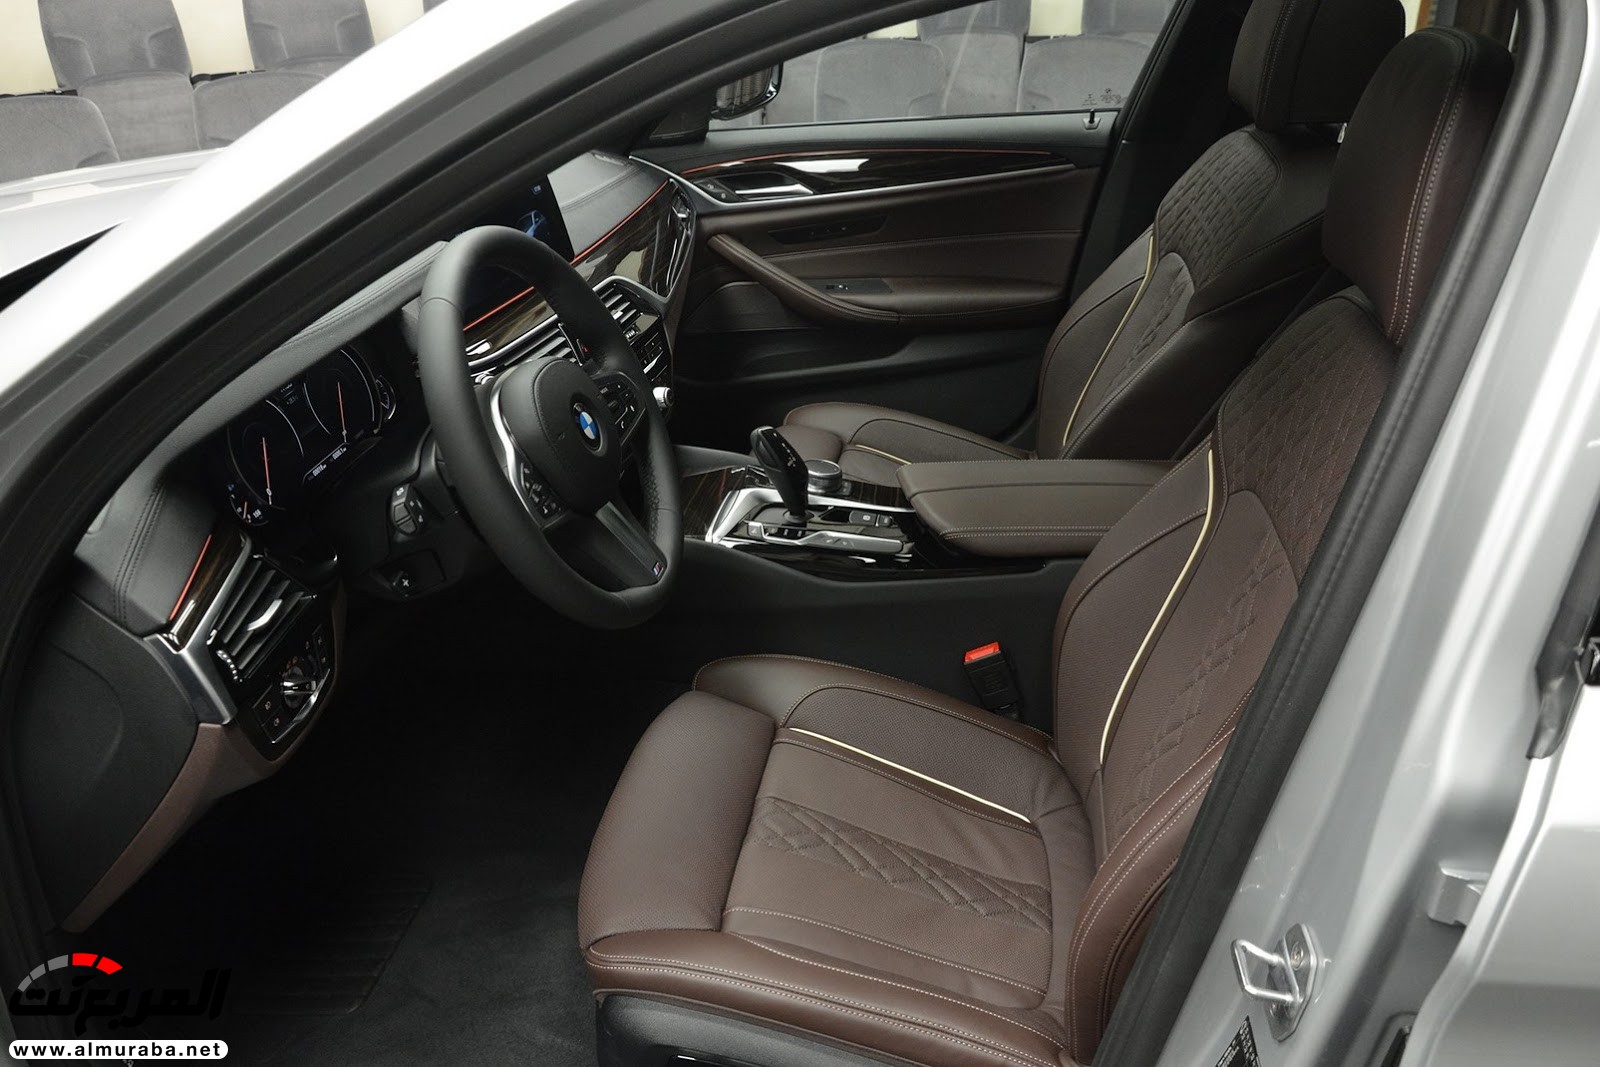 "بي إم دبليو" 540i الجديدة كلياً بتعديلات سبورت لاين معروضة بأبو ظبي BMW 65